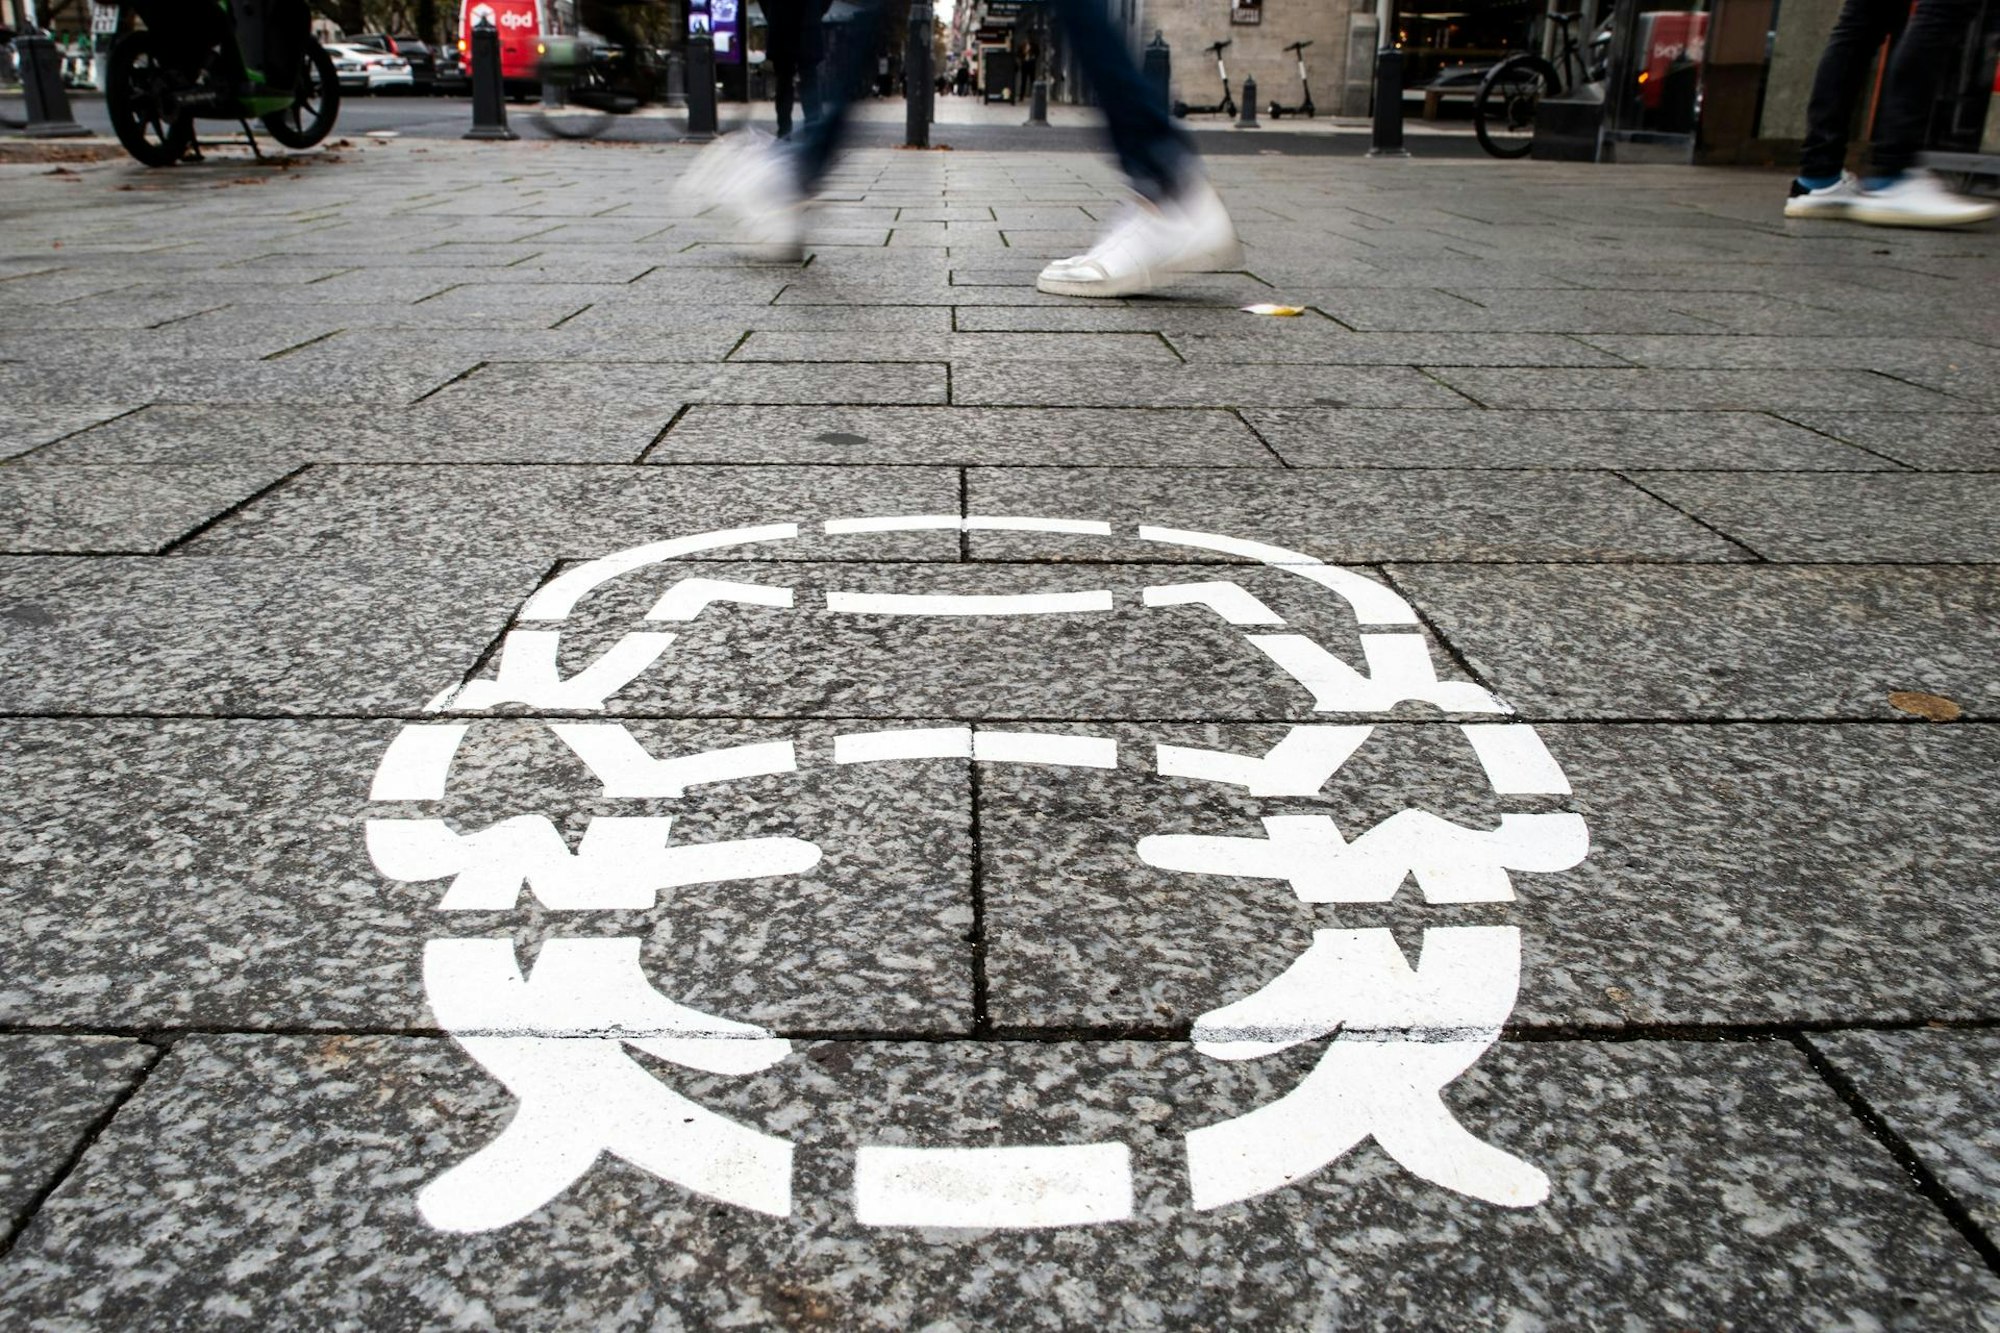 Corona-Piktogramme wurden als Hinweis auf die Maskenpflicht auf einem Bürgersteig in Düsseldorf gesprüht.